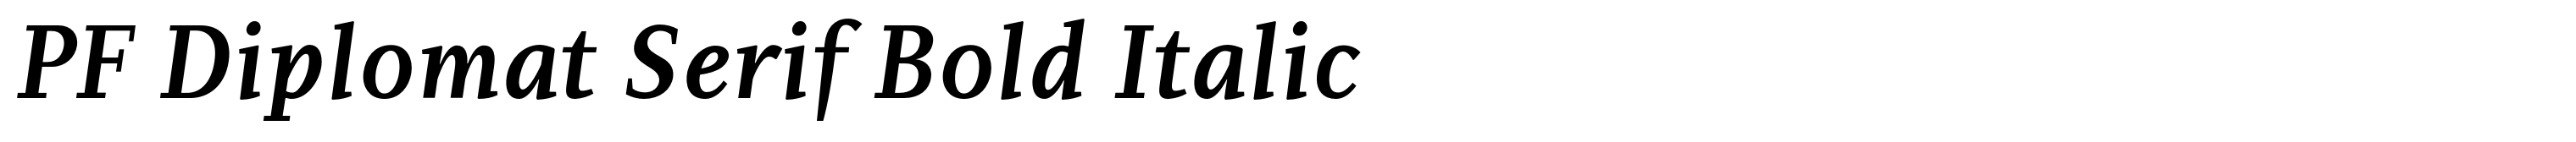 PF Diplomat Serif Bold Italic